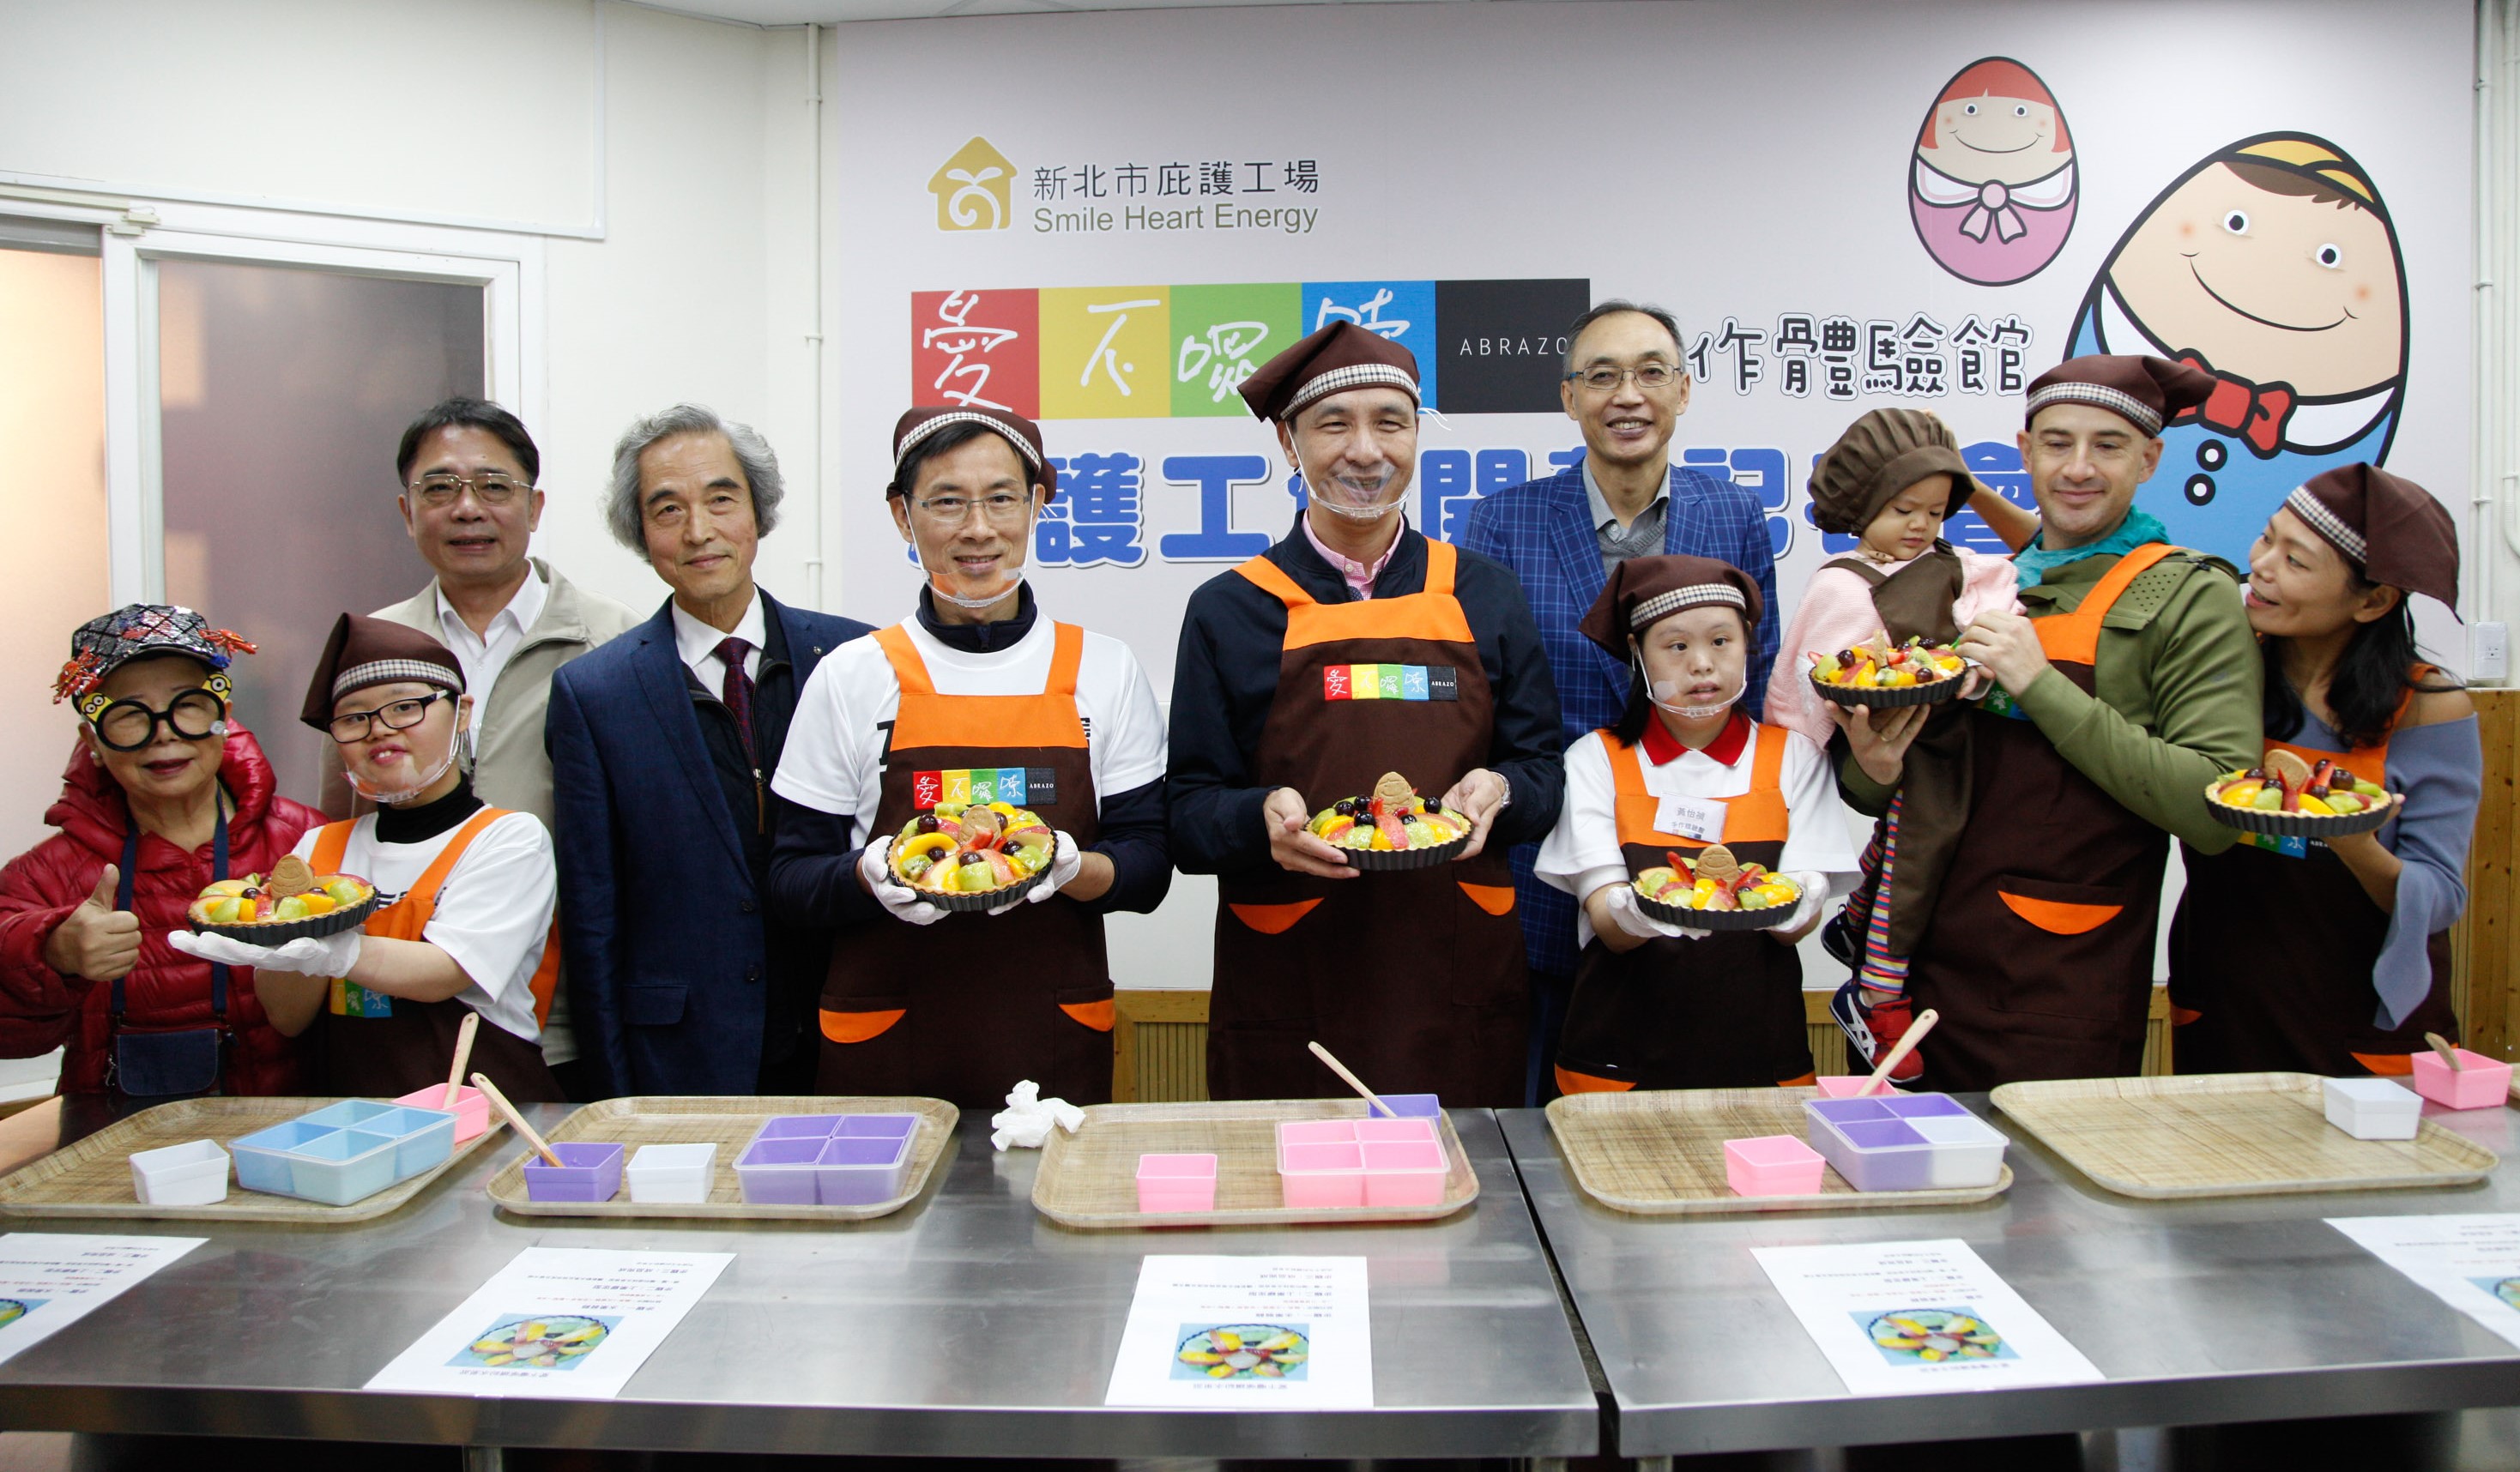 市長、董事長及吳鳳完成水果派